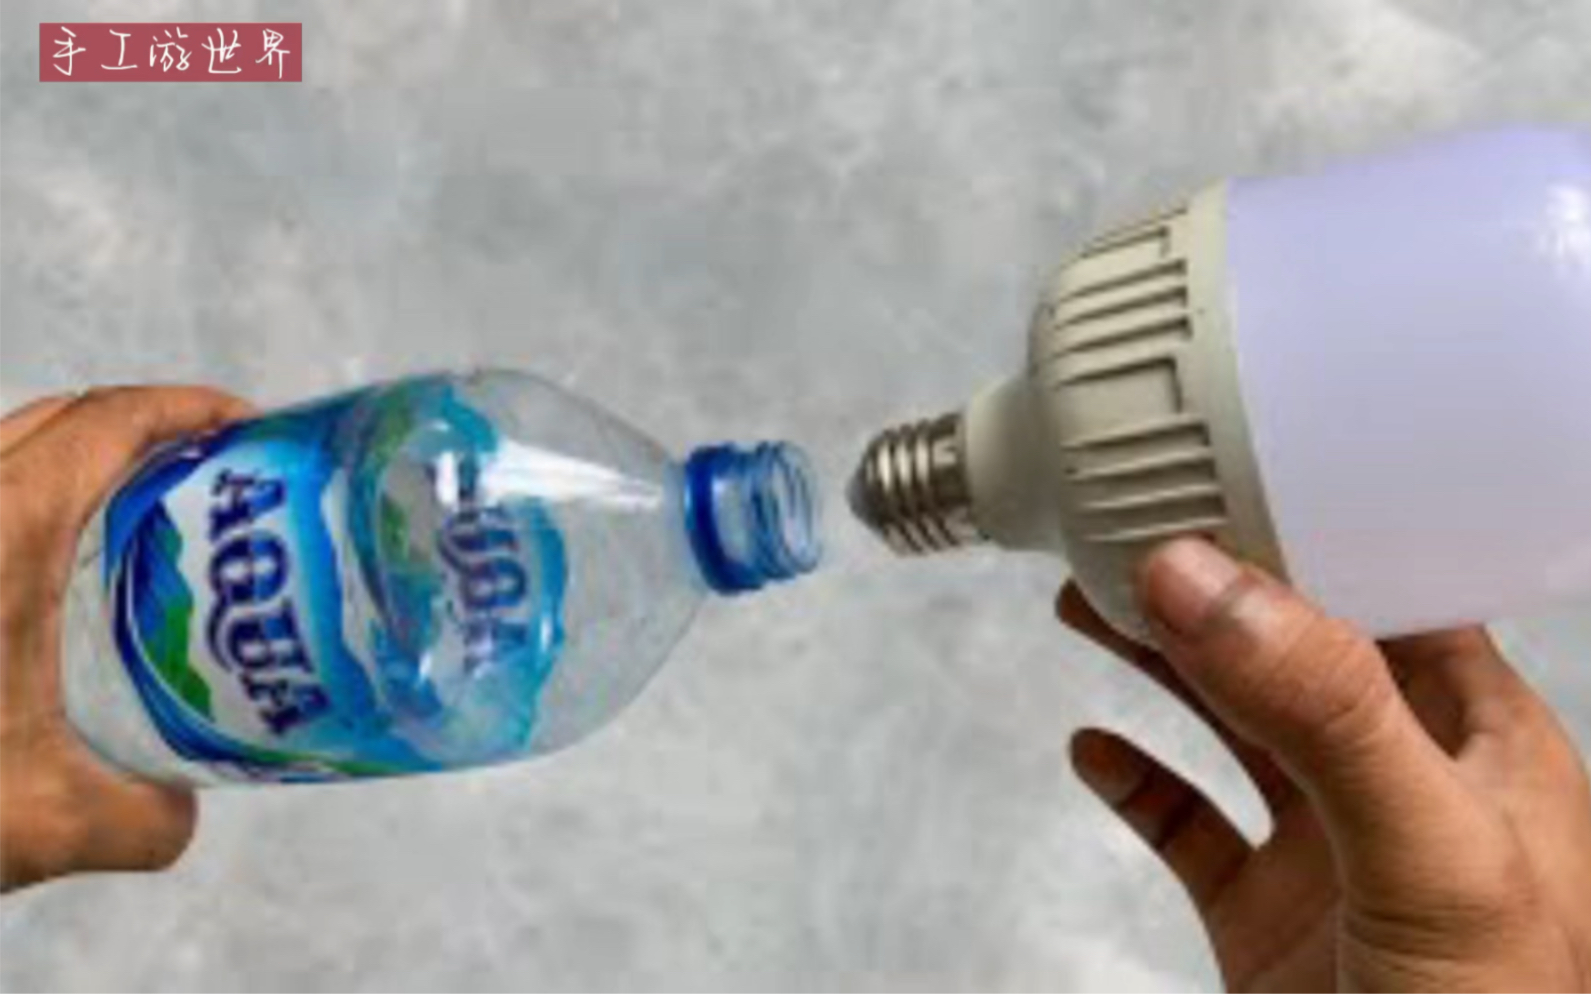 自制换灯泡工具，是无聊的发明还是实用的工具？